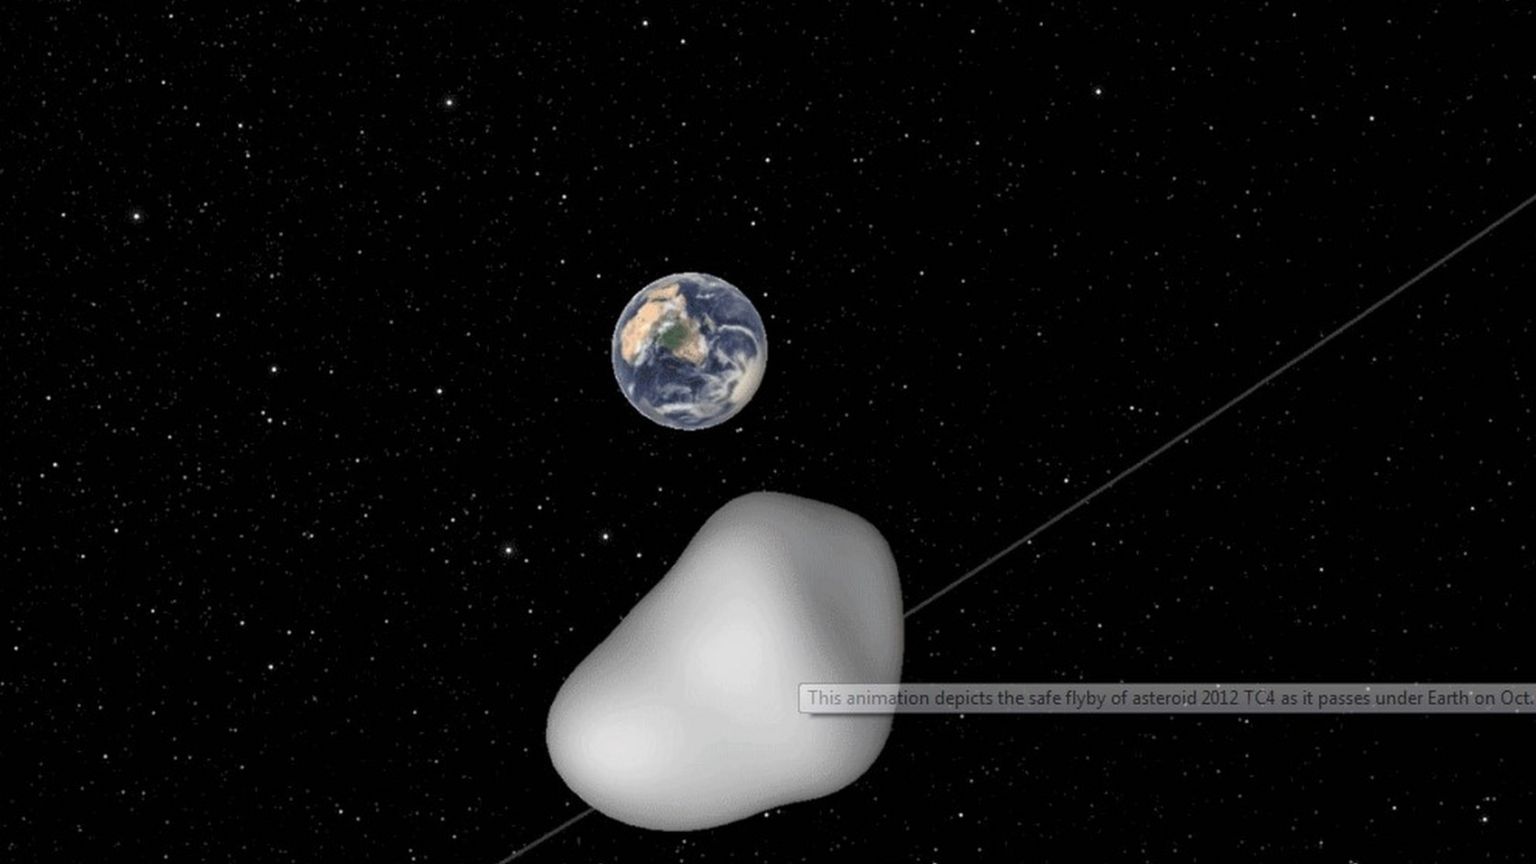 Illustration of asteroid 2012 TC4